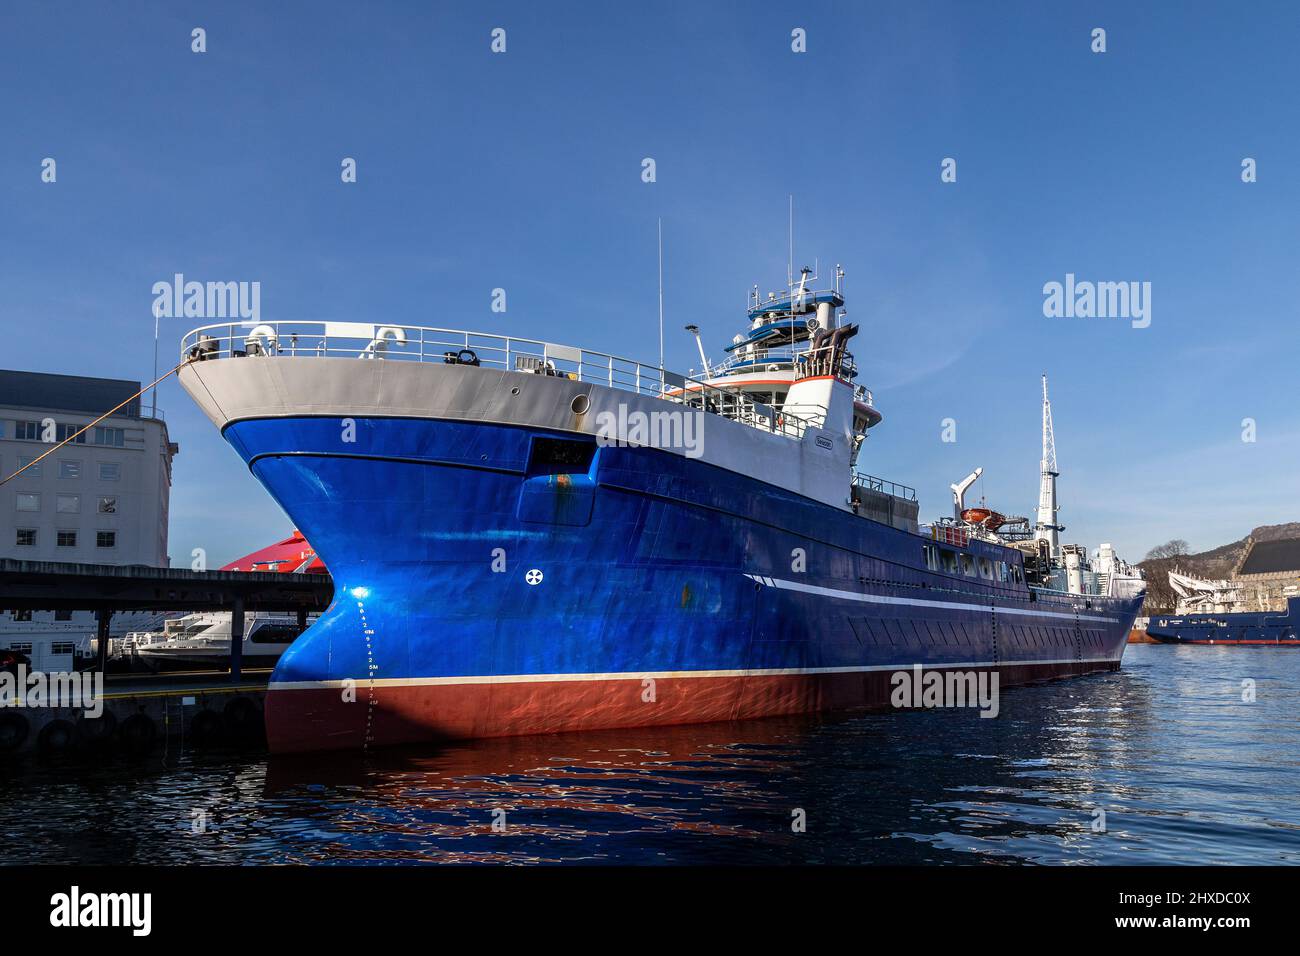 Aqua Kvaloy (Kvaløy), a service vessel for aqua, fish farming -  at quay in the port of Bergen, Norway Stock Photo